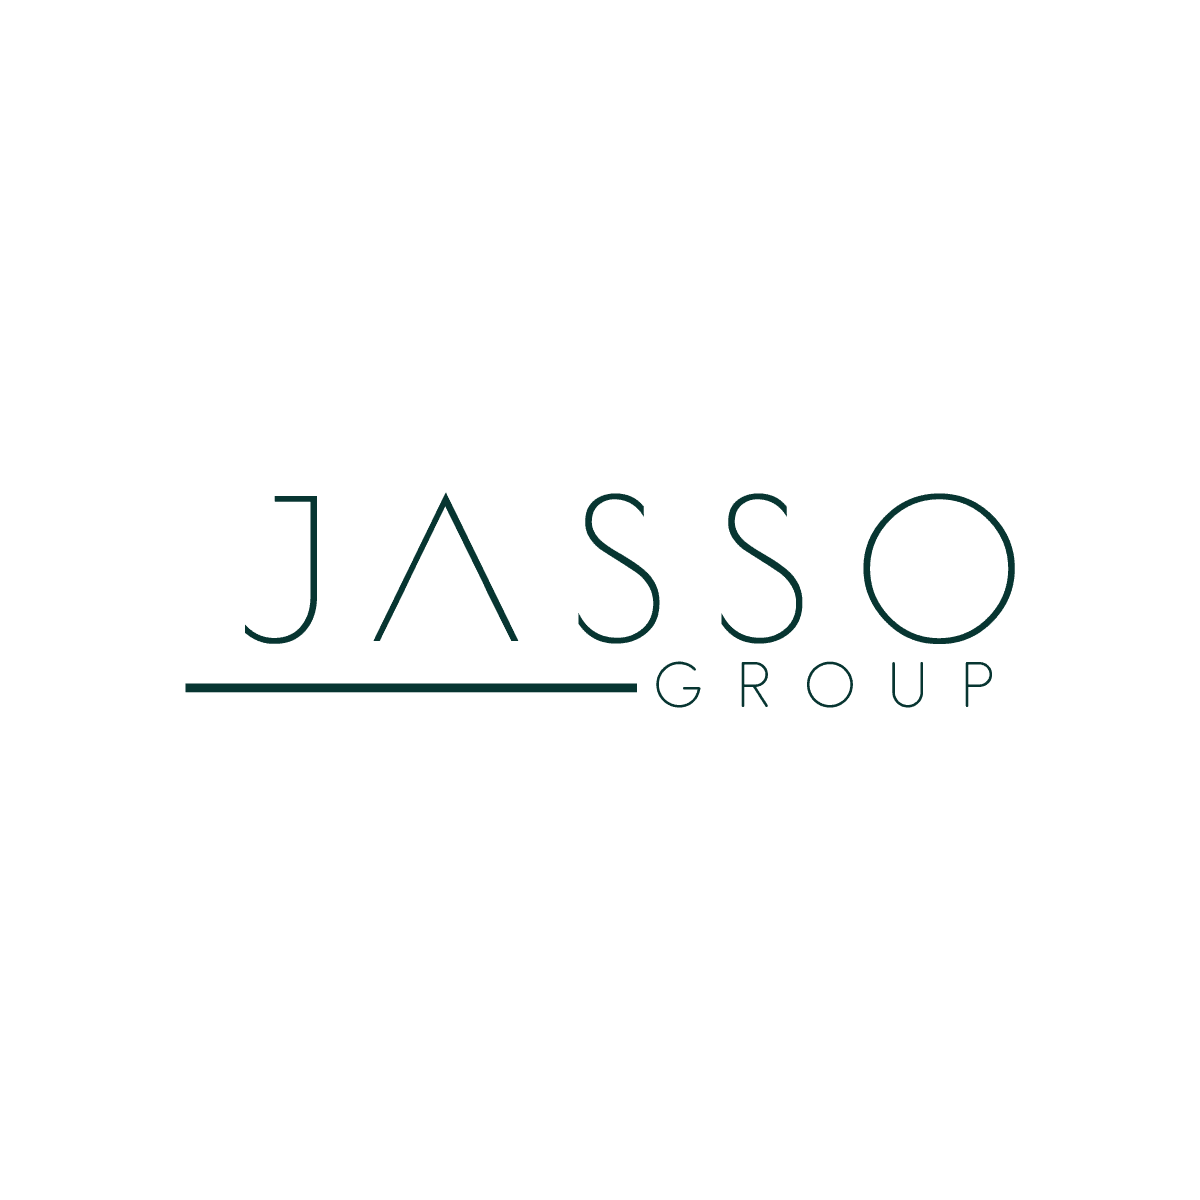 JASSO-GROUP-LOGO